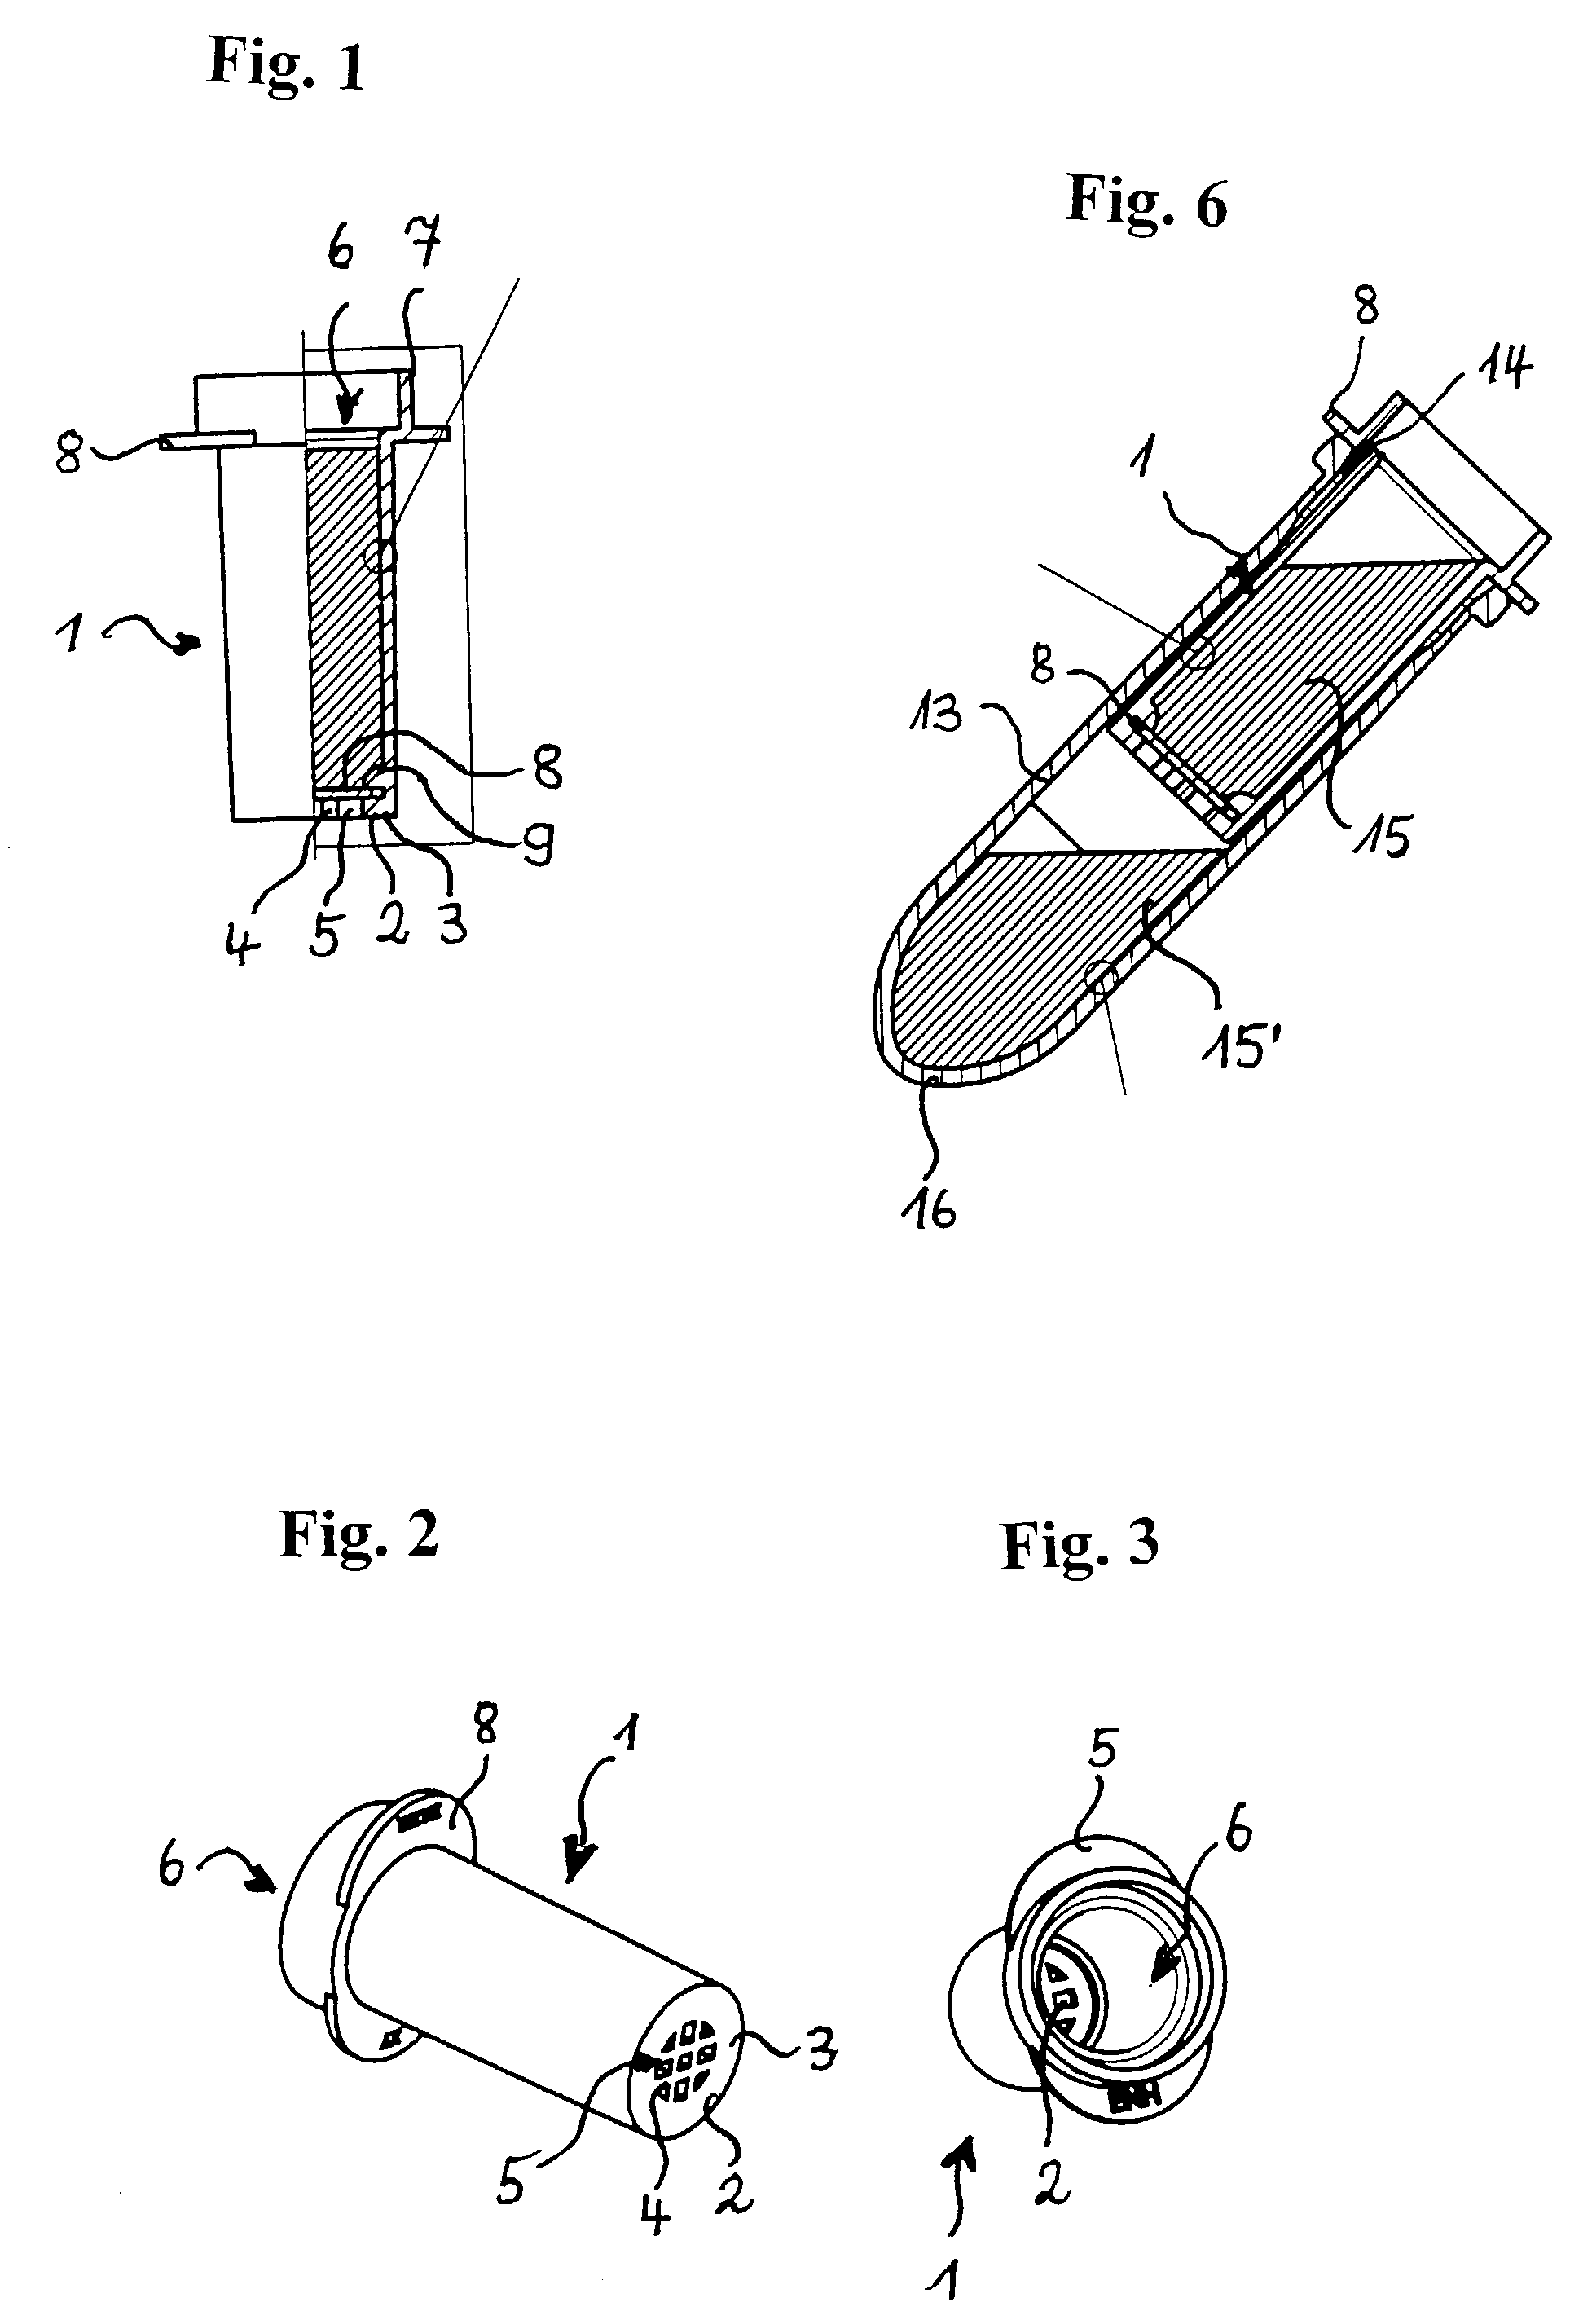 Membrane apparatus for receiving samples